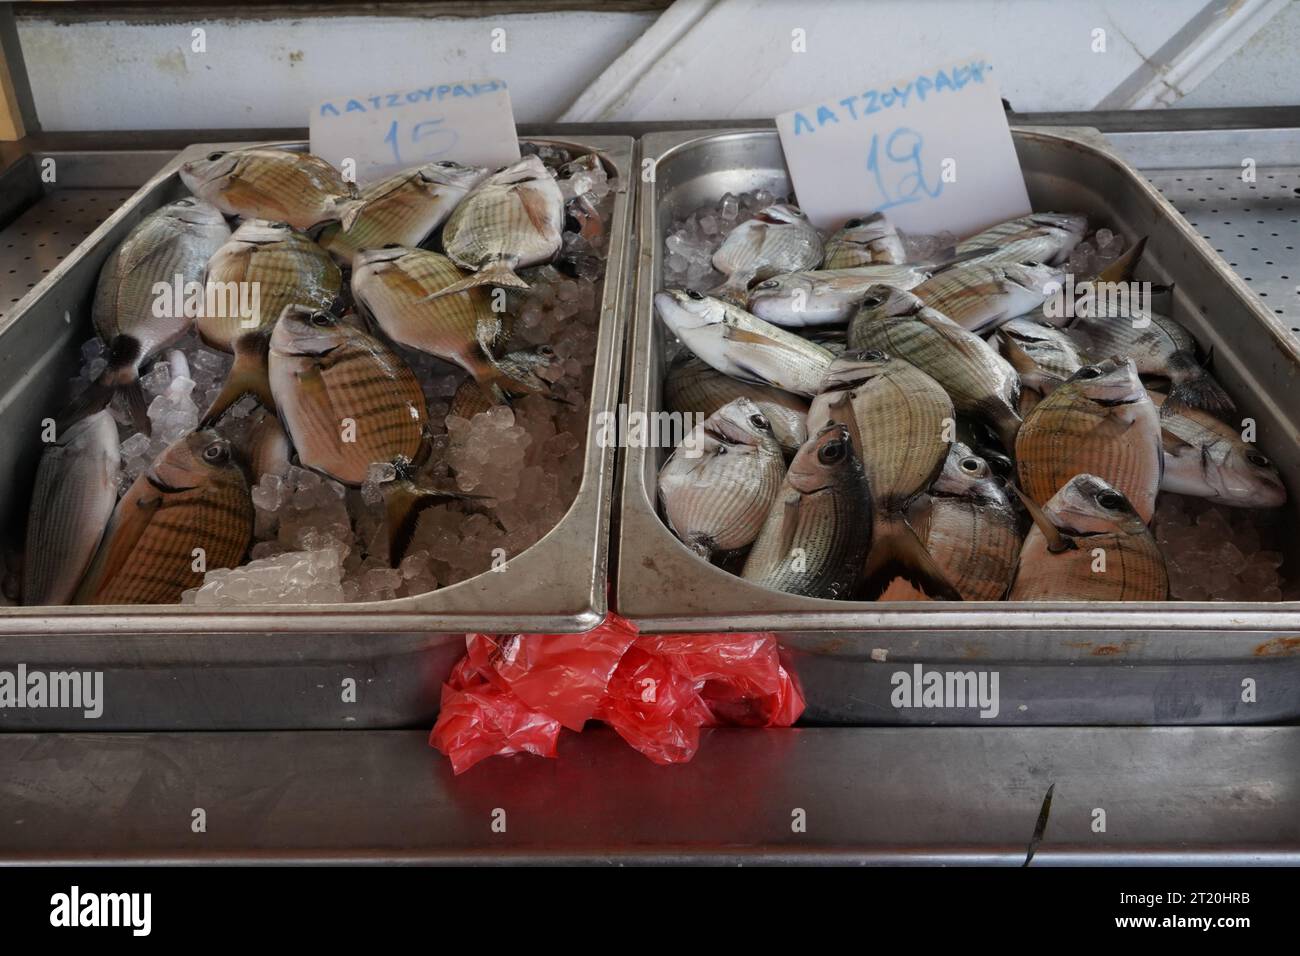 Dorade blanche, en latin appelée Diplodus sargus argus dans des récipients en acier inoxydable exposés au marché aux poissons. Banque D'Images